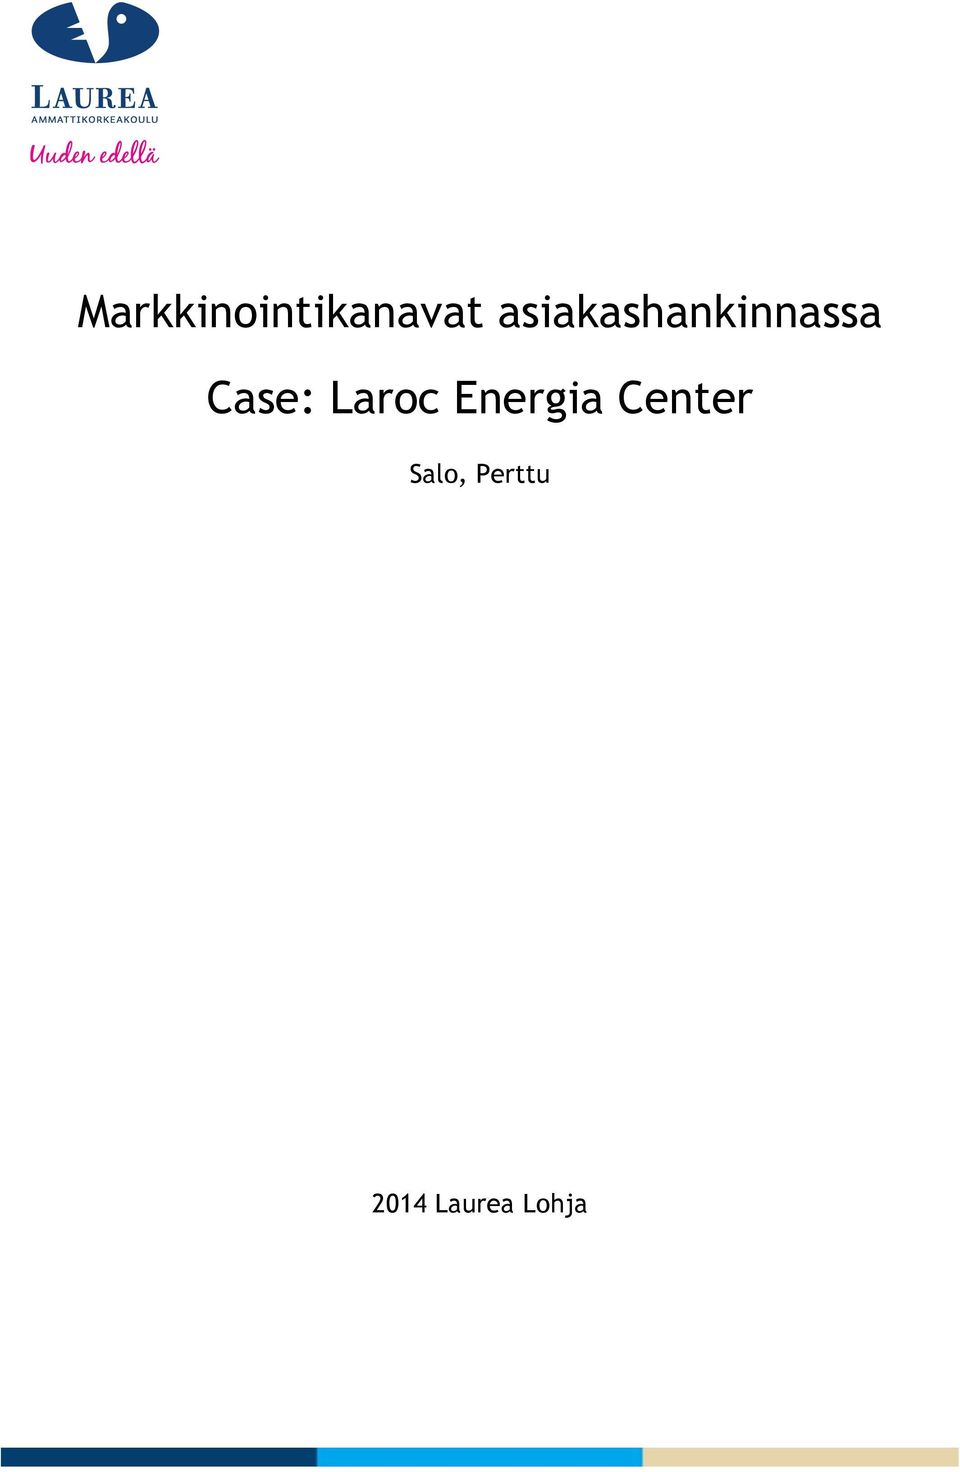 Case: Laroc Energia